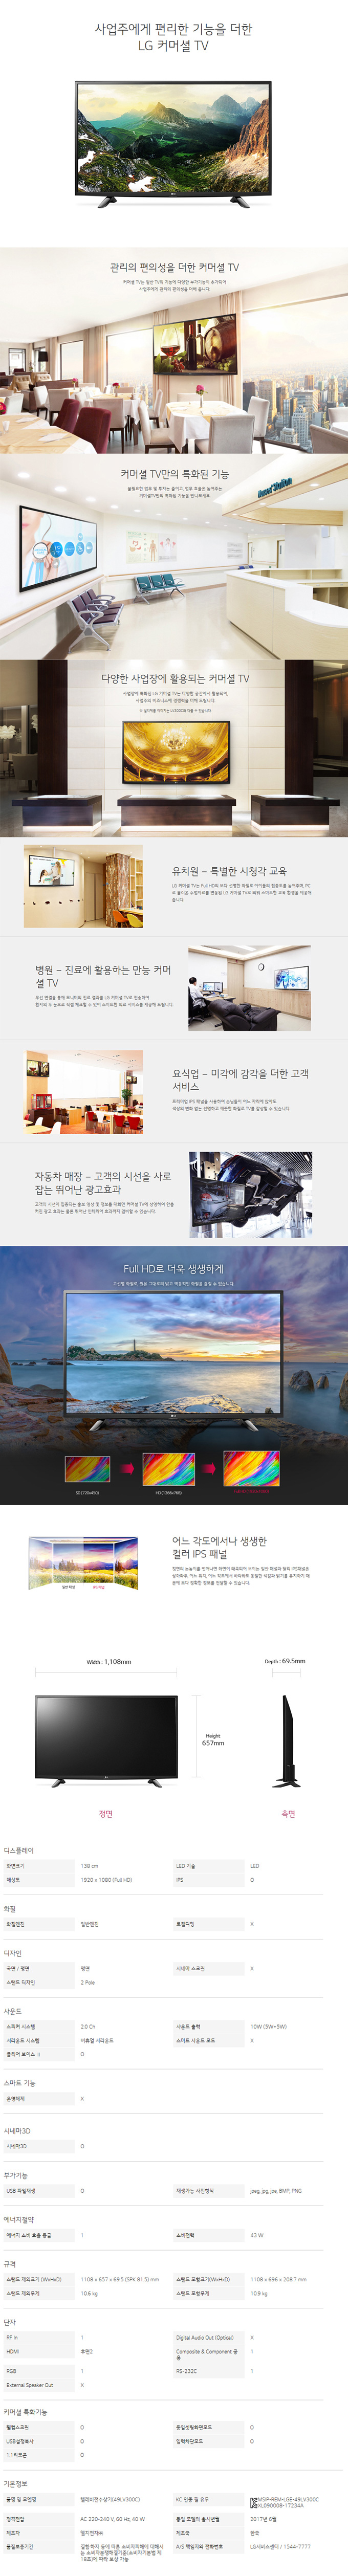 경동케이블 - LG 49인치 LED TV (49LV300C) 상세보기